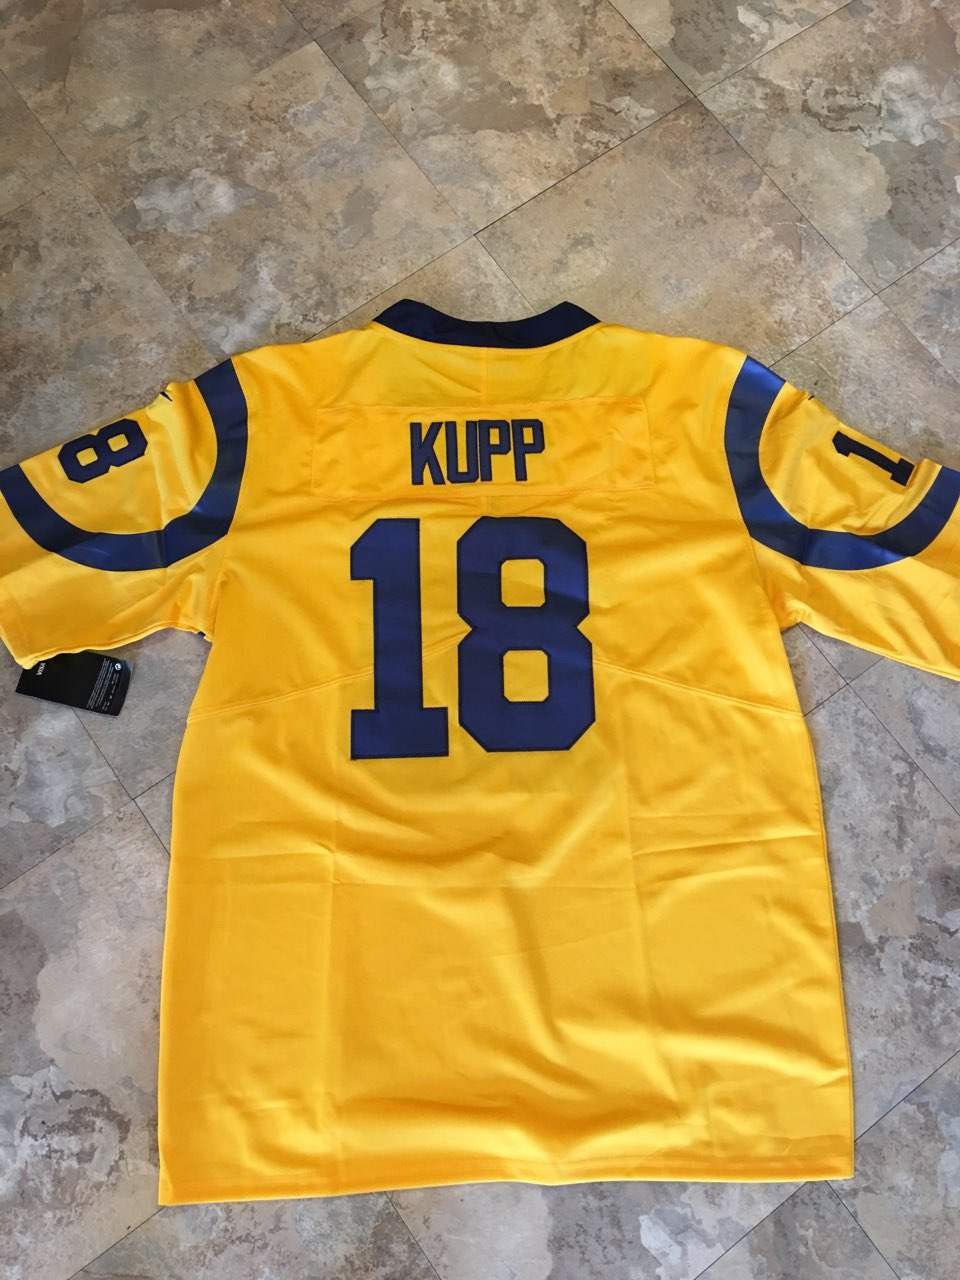 Kupp Jersey's Rams